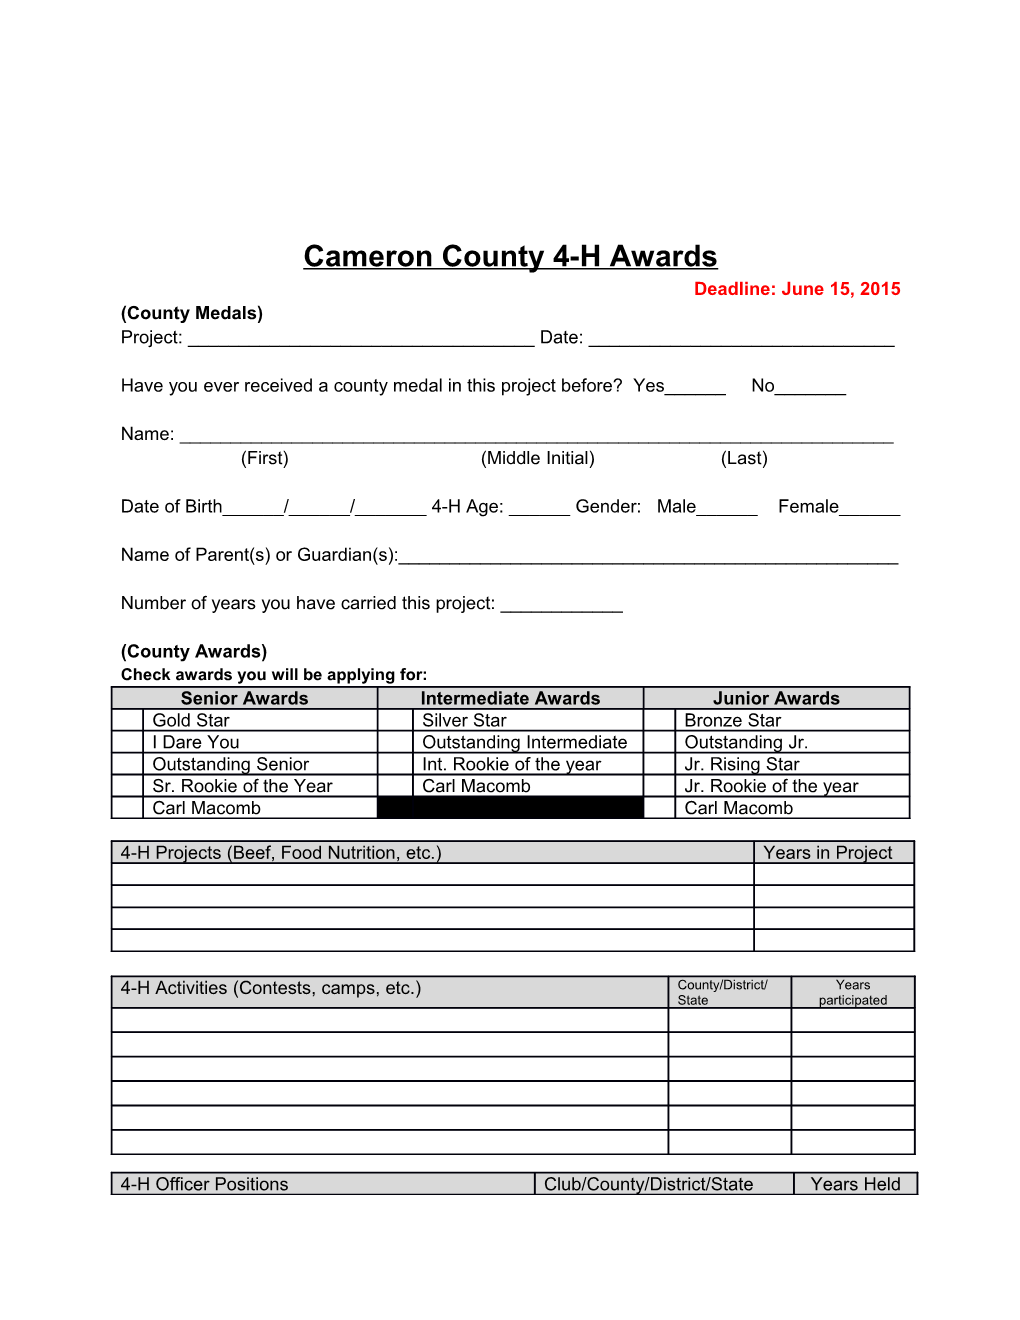 Cameron County 4-H Awards